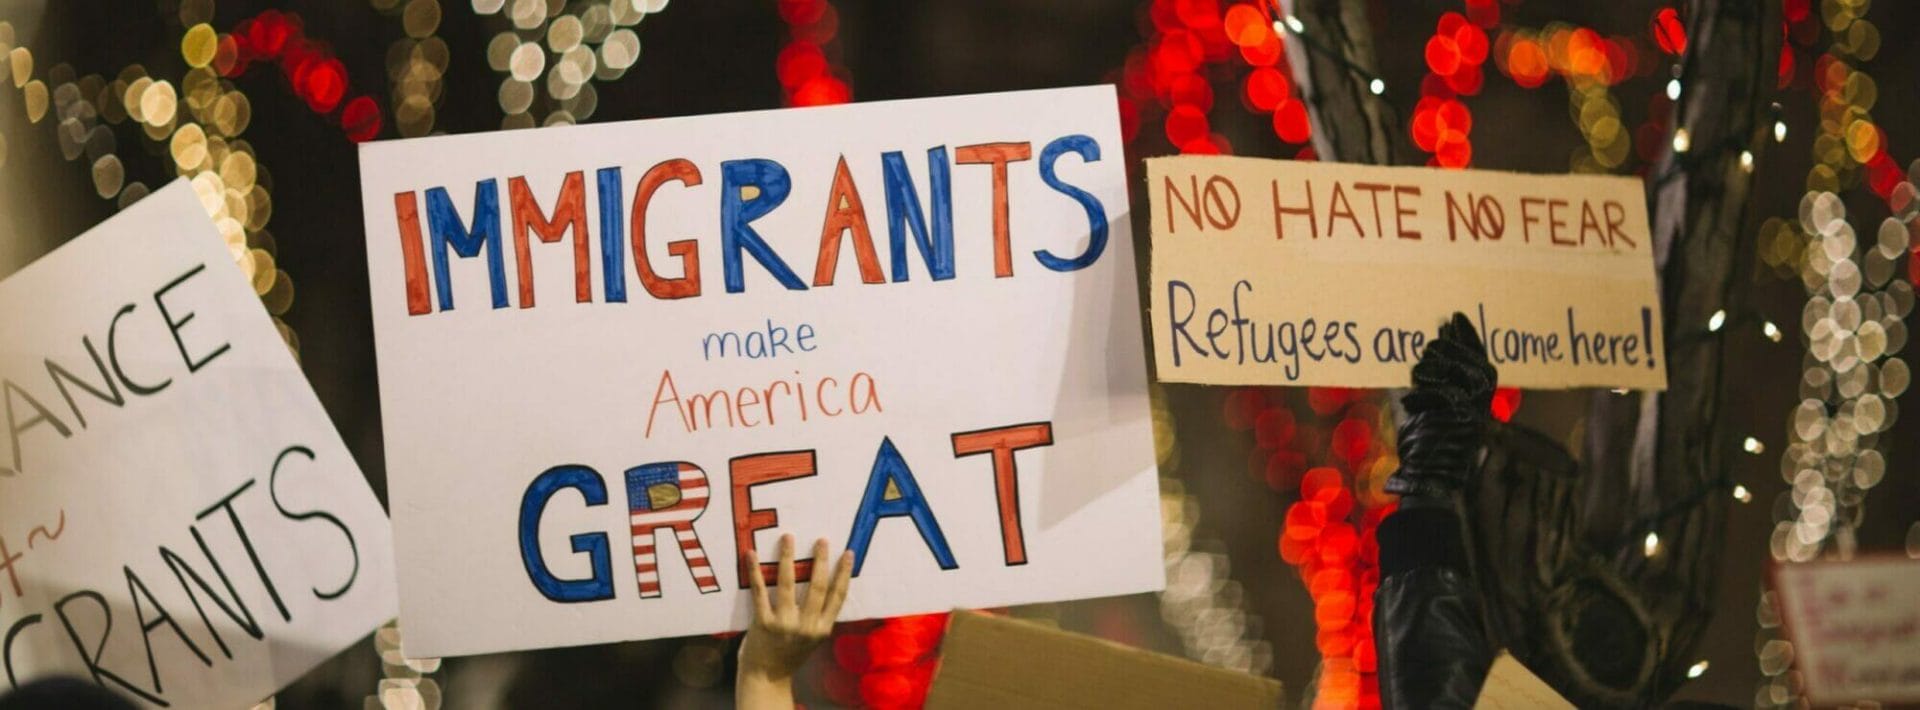 gente sosteniendo carteles que dicen "los inmigrantes hacen a america grande"